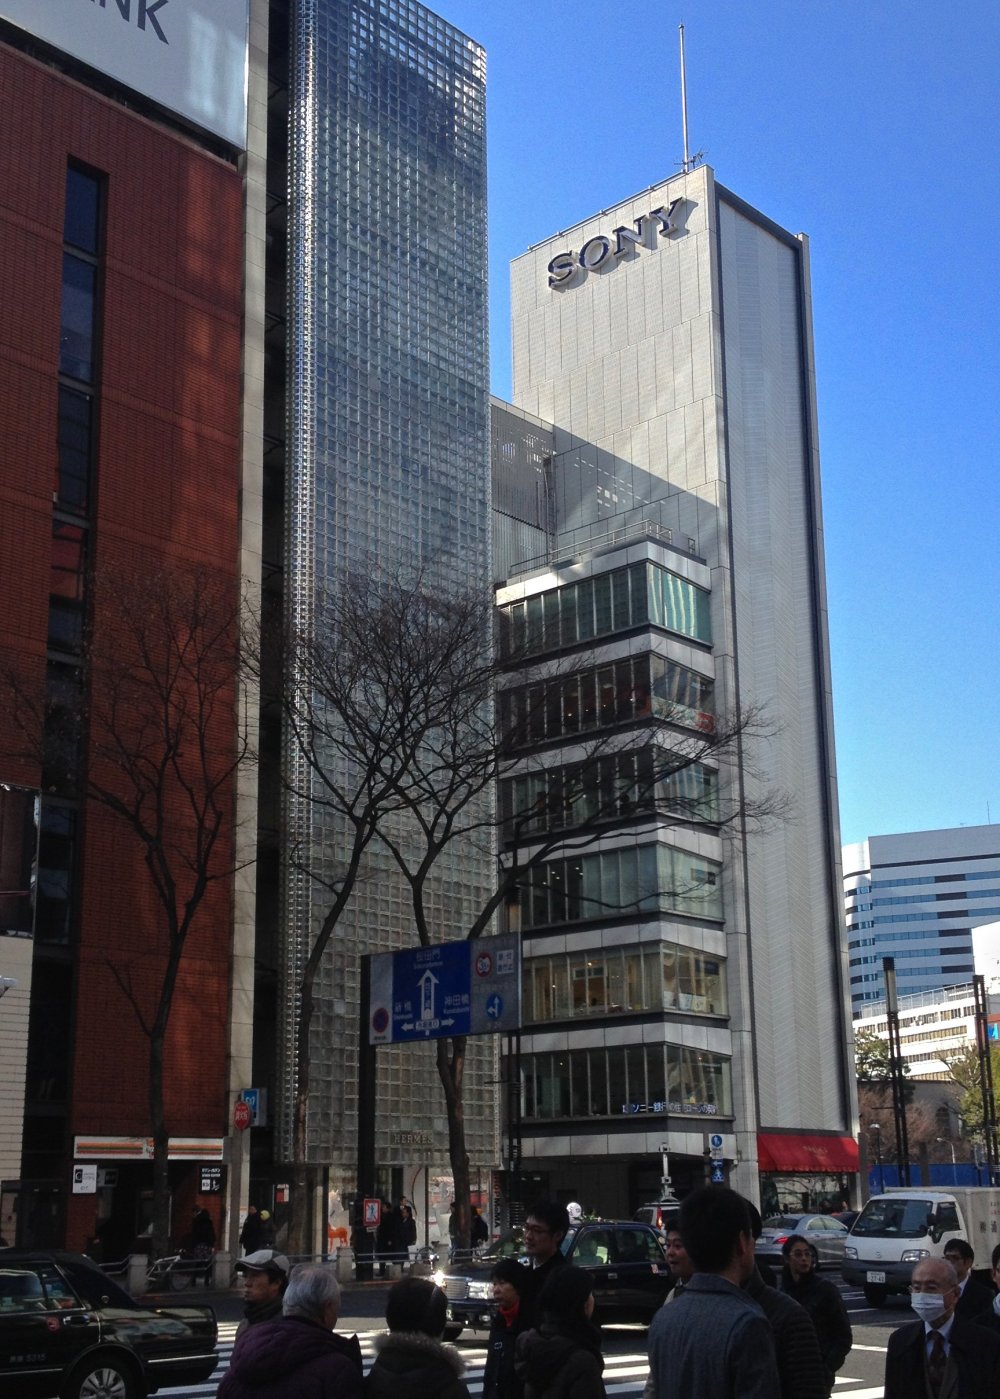 Tòa nhà Sony ở Ginza có thể đi vào từ lối ra B9 tại ga Ginza. Tòa nhà có bảy tầng với nhiều màn hình hiển thị các tiện ích điện tử, một quán cà phê ở tầng hầm và trên tầng cao nhất. Các nhân viên tại Tòa nhà Sony rất thông thạo khi thuyết minh về các sản phẩm và họ rất sẵn lòng trả lời bất kỳ câu hỏi nào bạn có thể có.